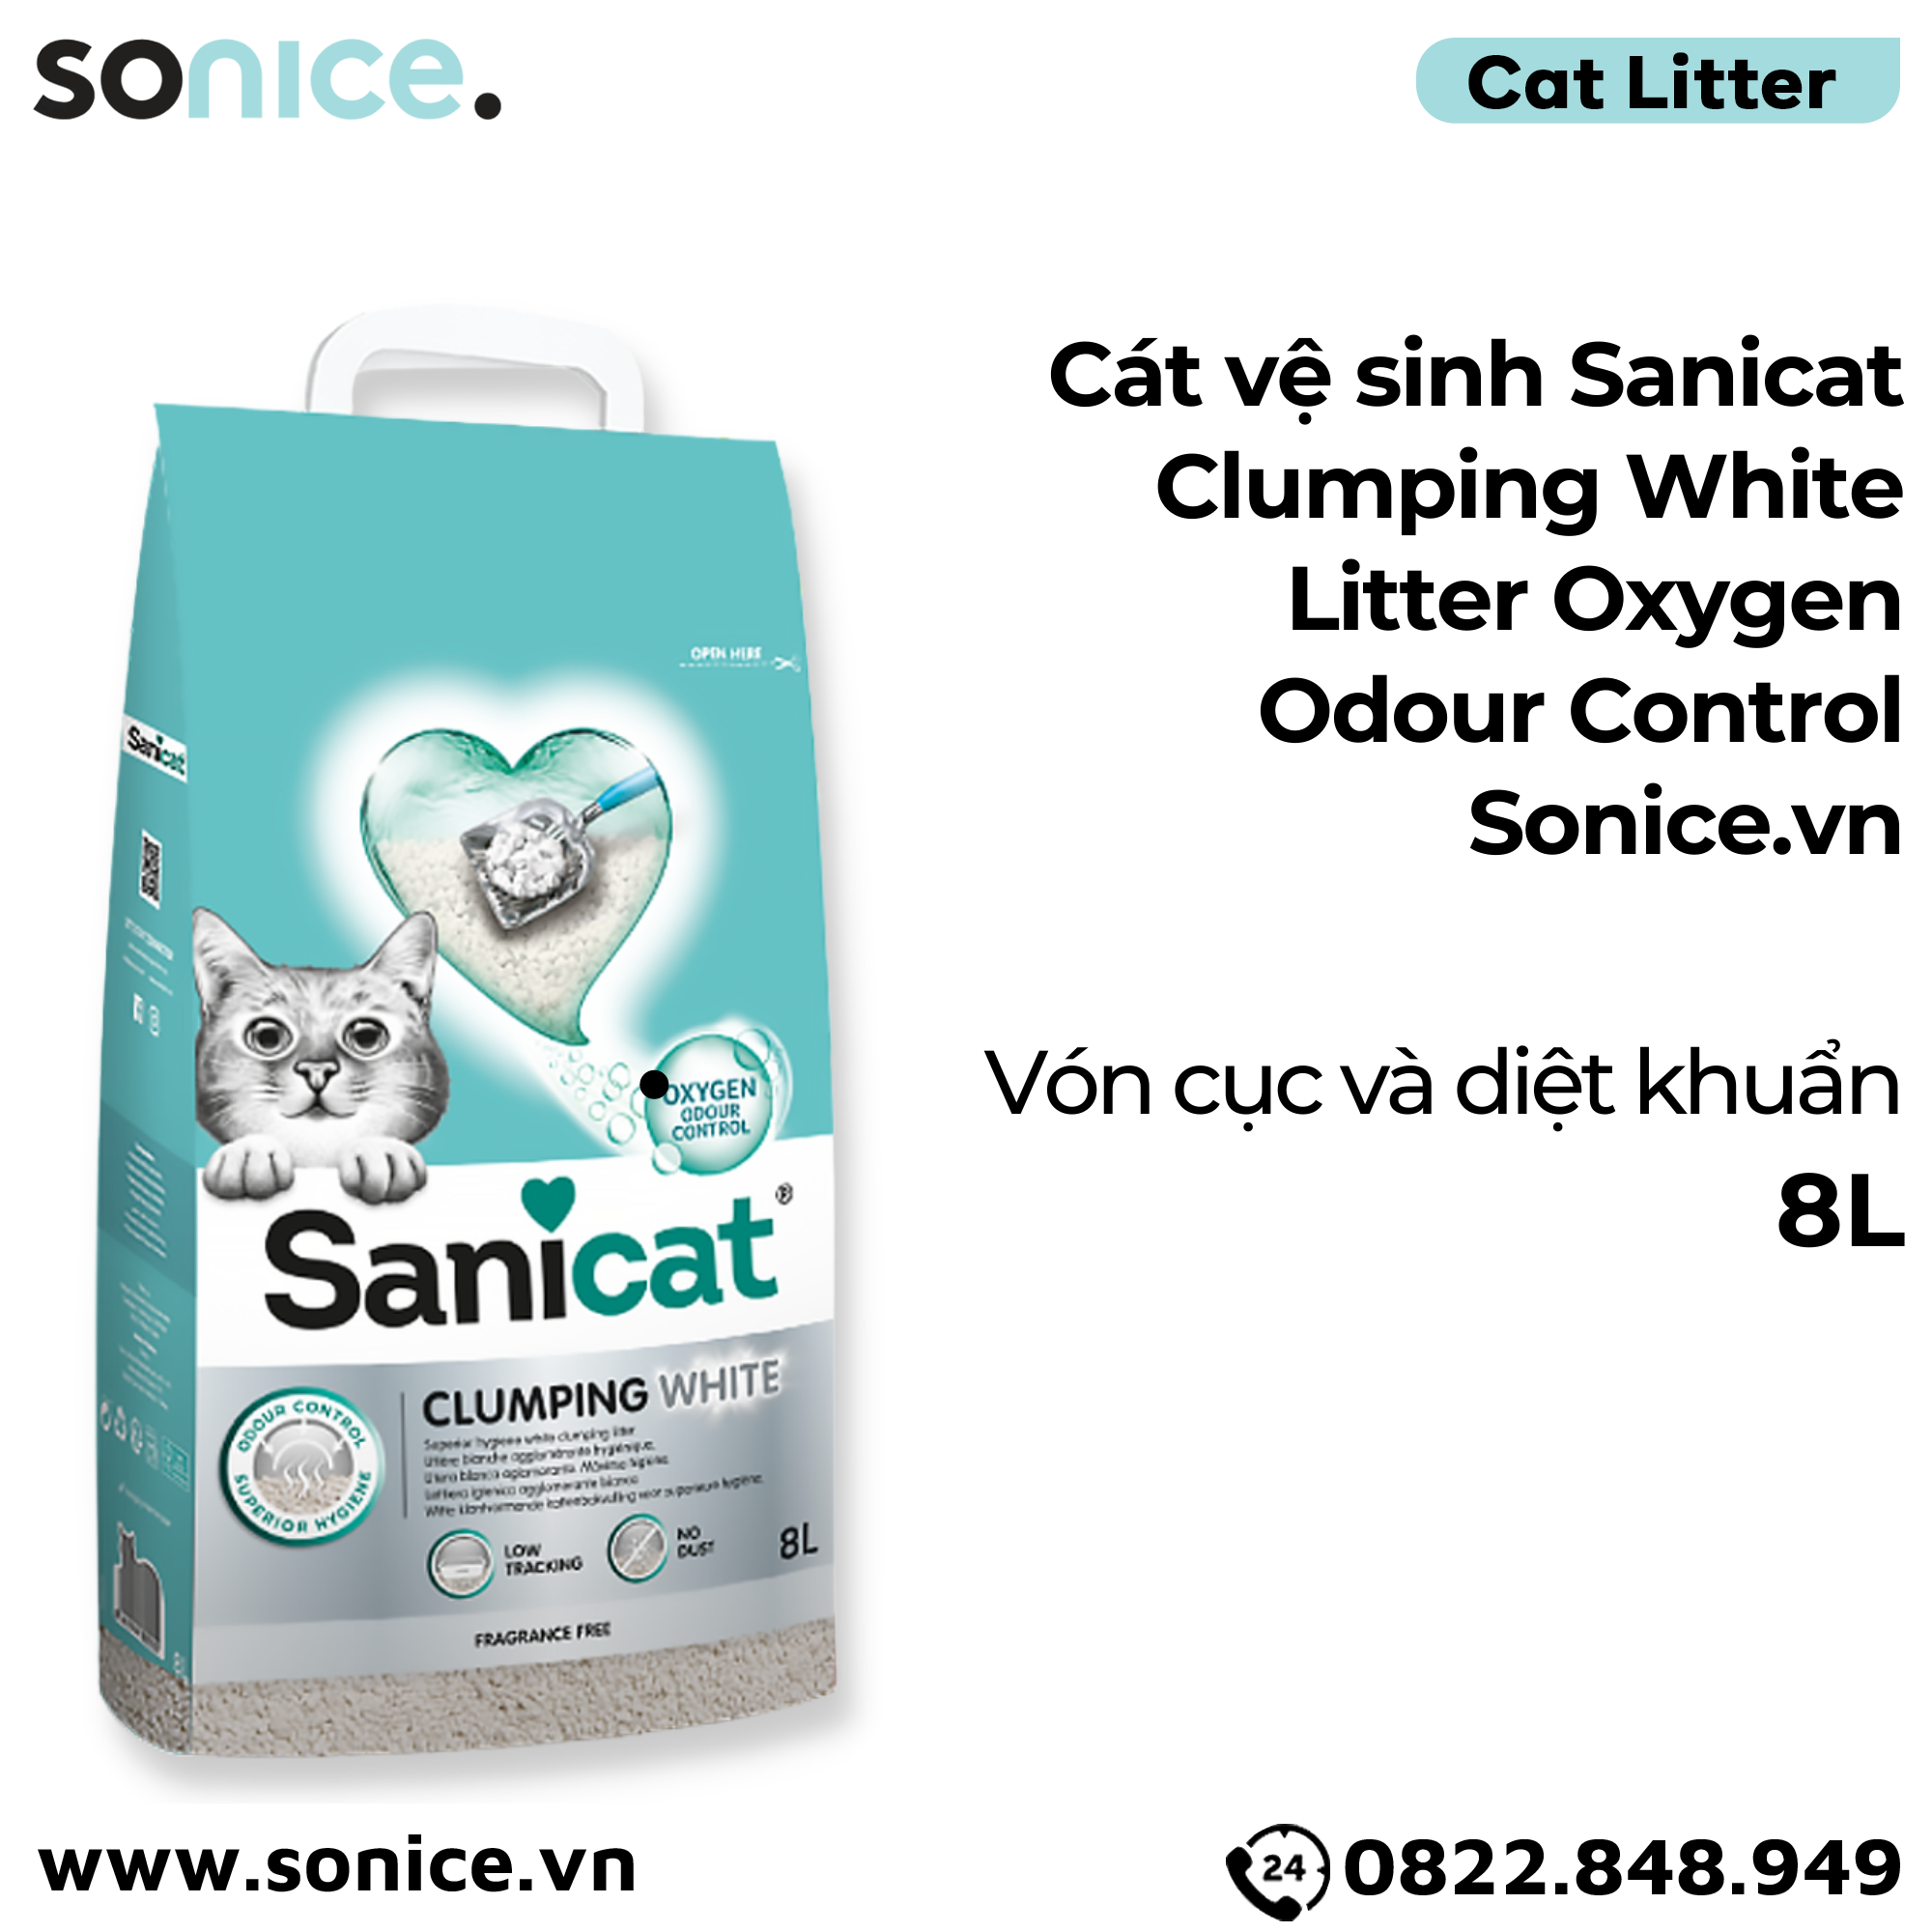  Cát vệ sinh Sanicat Clumping White Litter Oxygen Odour Control 8L - Vón cục và diệt khuẩn SONICE. 